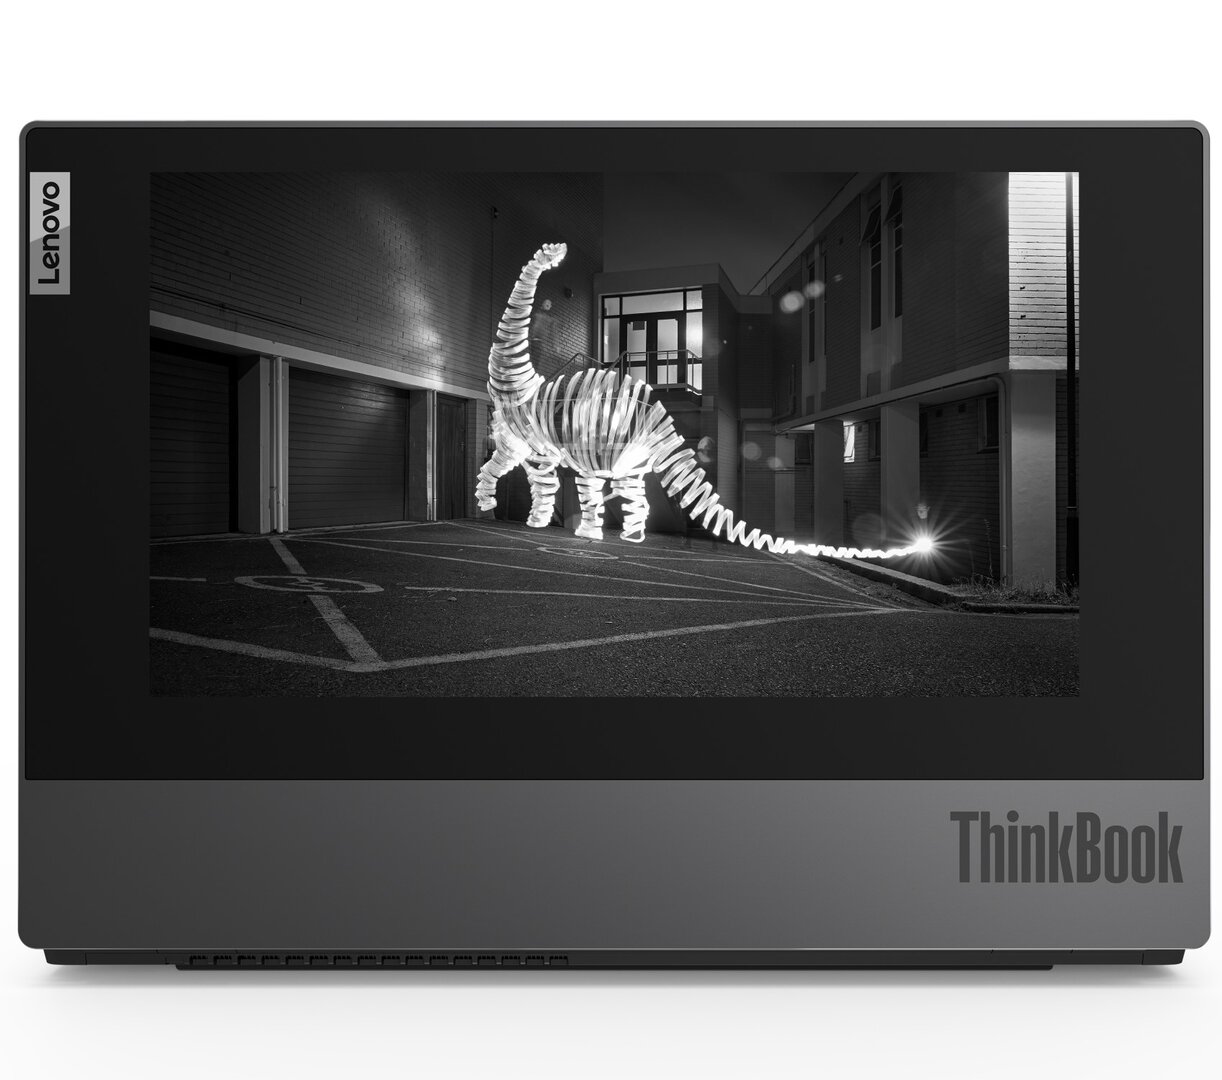 Lenovo ThinkBook Plus với màn hình e-ink trên nắp